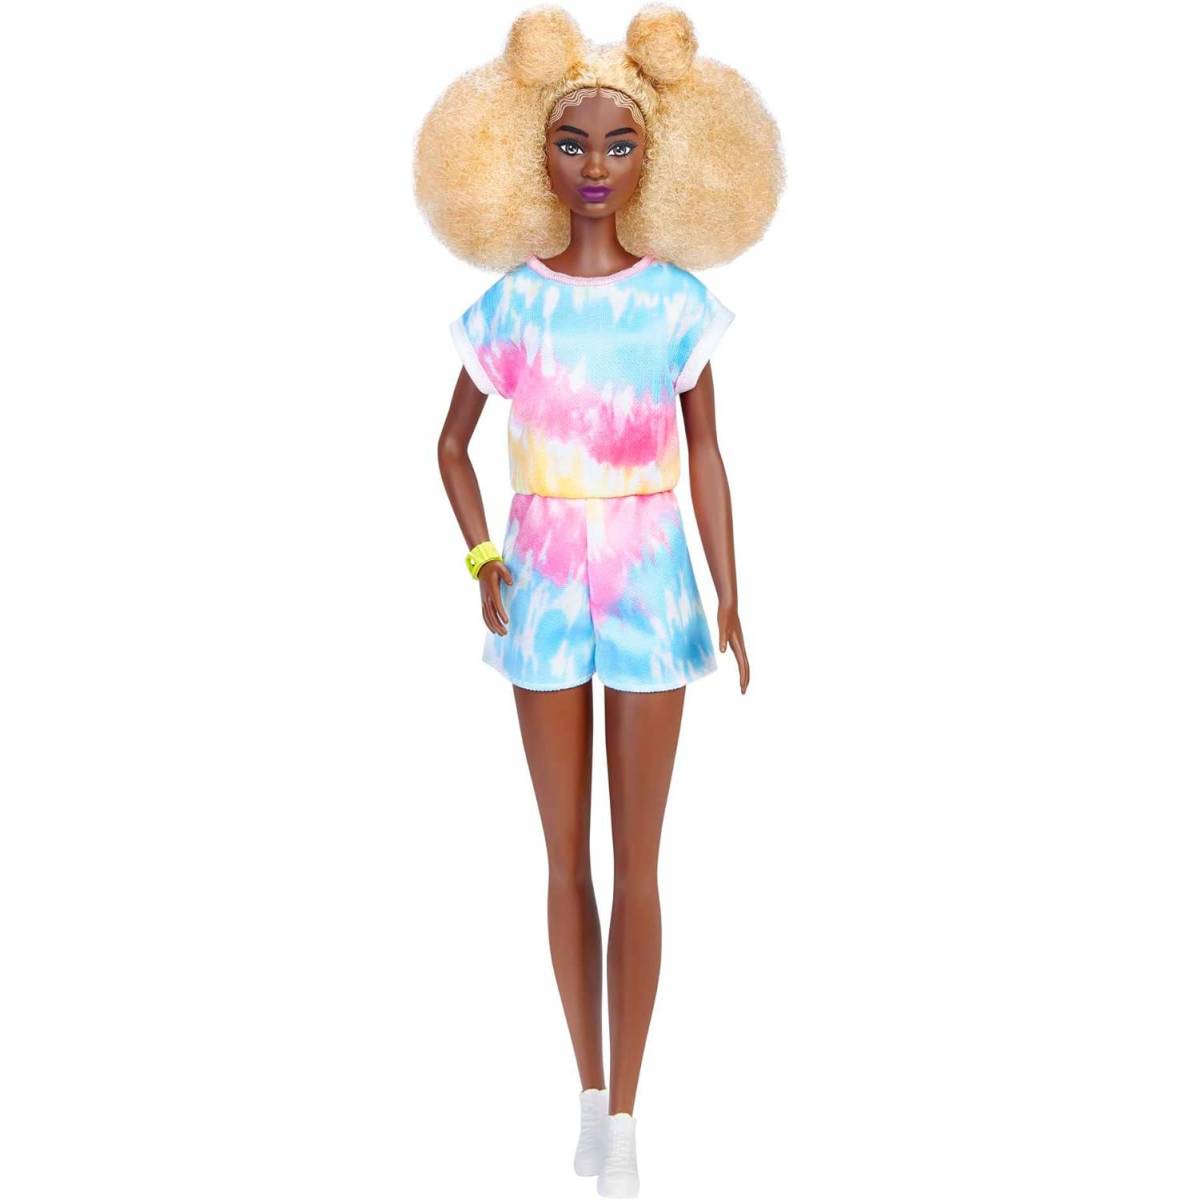 Barbie Fashionistas poupée mannequin aux cheveux blonds